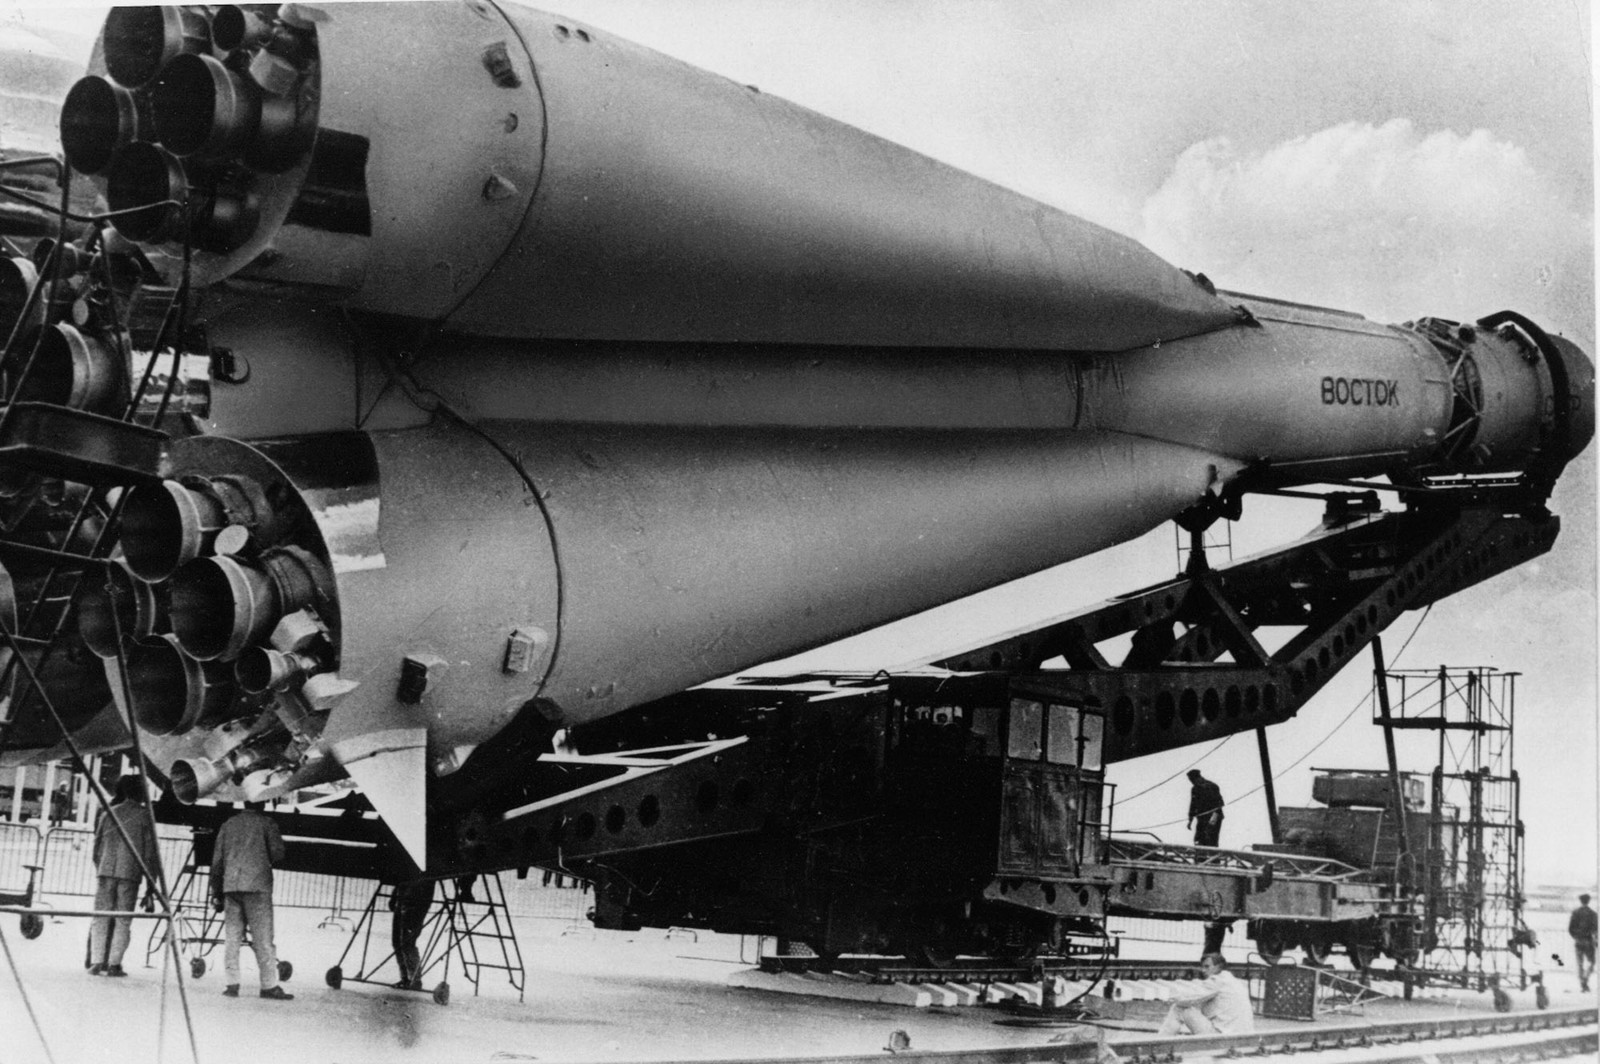 Фото ракеты гагарина. Космический корабль Гагарина Восток 1. Ракета Юрия Гагарина Восток-1. Восток 1 Гагарин 1961. Космический корабль Восток Юрия Гагарина 1961.